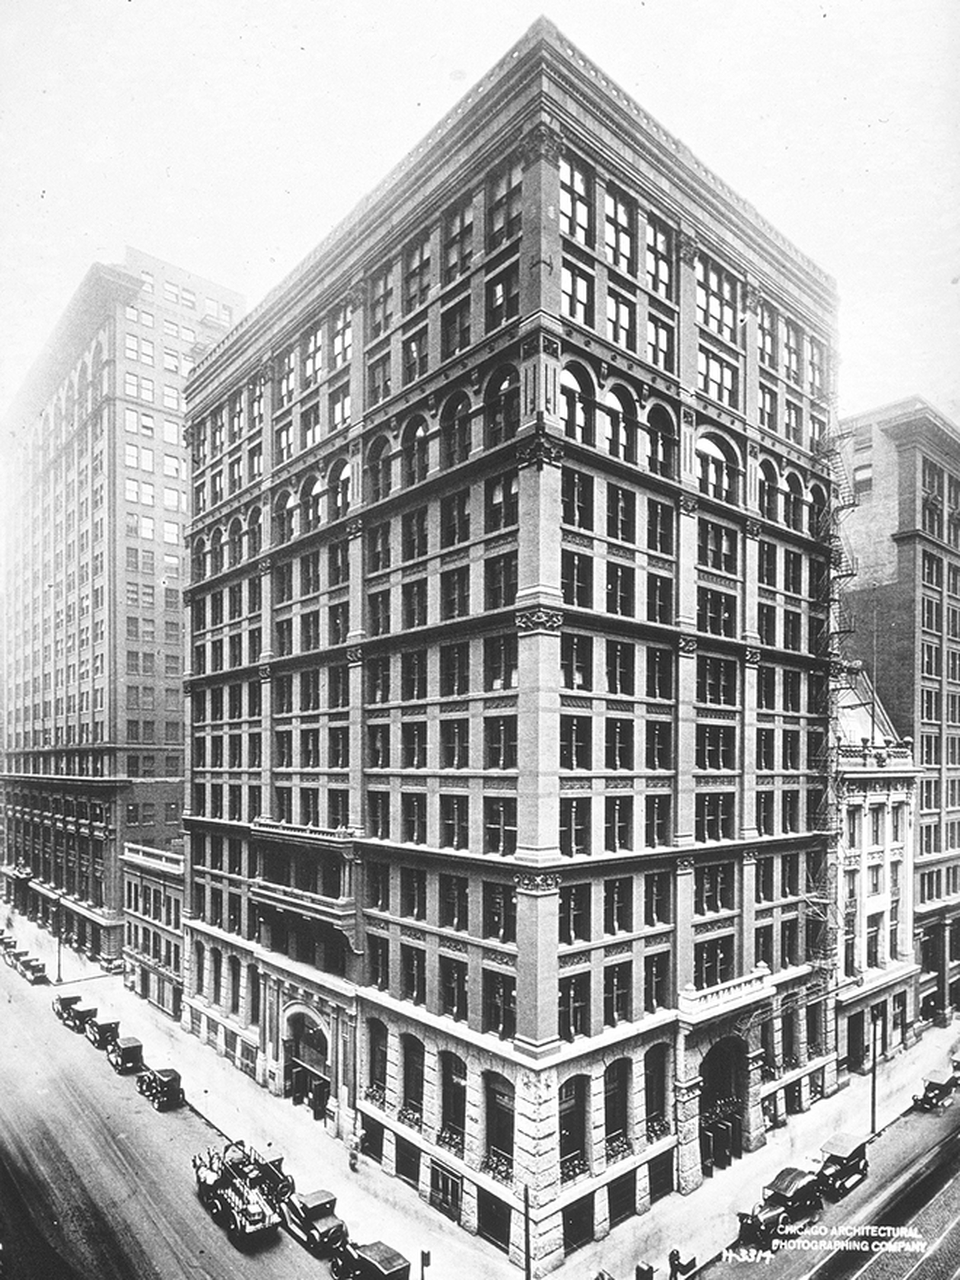 Minden skyscraperek őse, a Home Insurance Building (1885), Chicagoban - 10 szintes felhőkarcoló (forrás: Wikimedia)